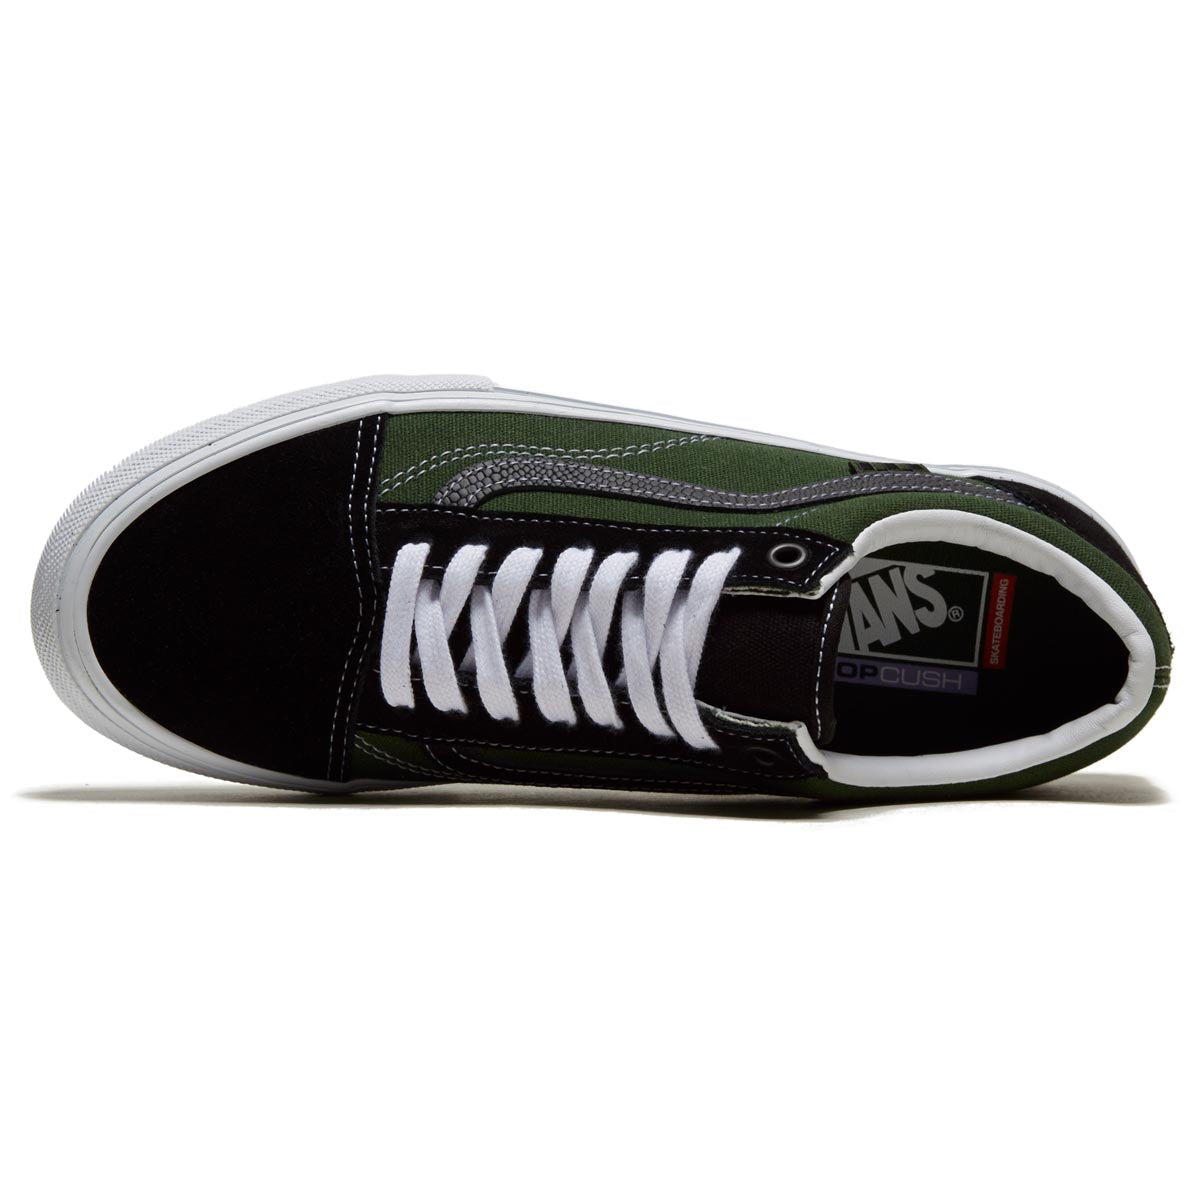 Vans Skate Old Skool Shoes - Safari Black/Greenery – CCS